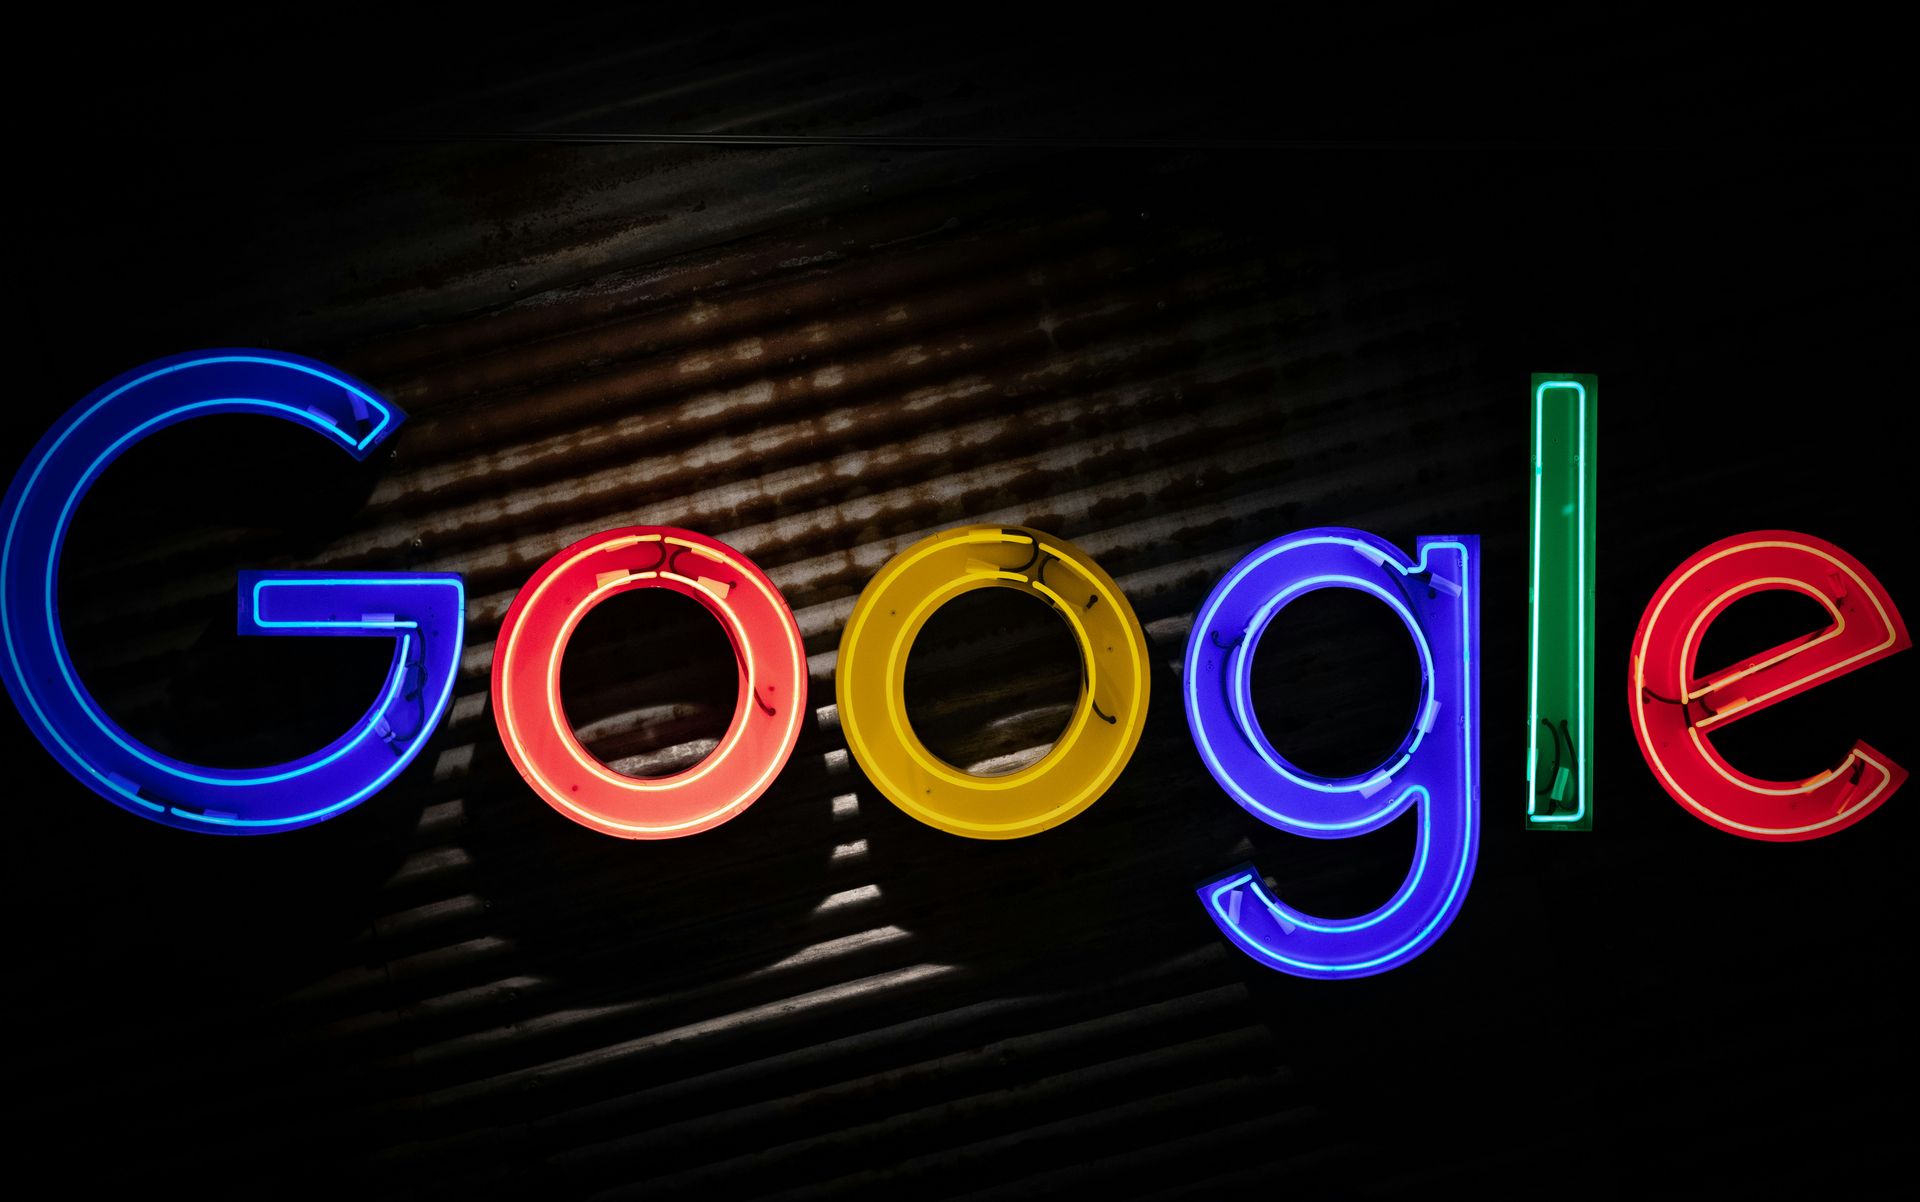 Die Suche hat sich weiterentwickelt? Die Wachstumsschmerzen der KI-Übersichten von Google